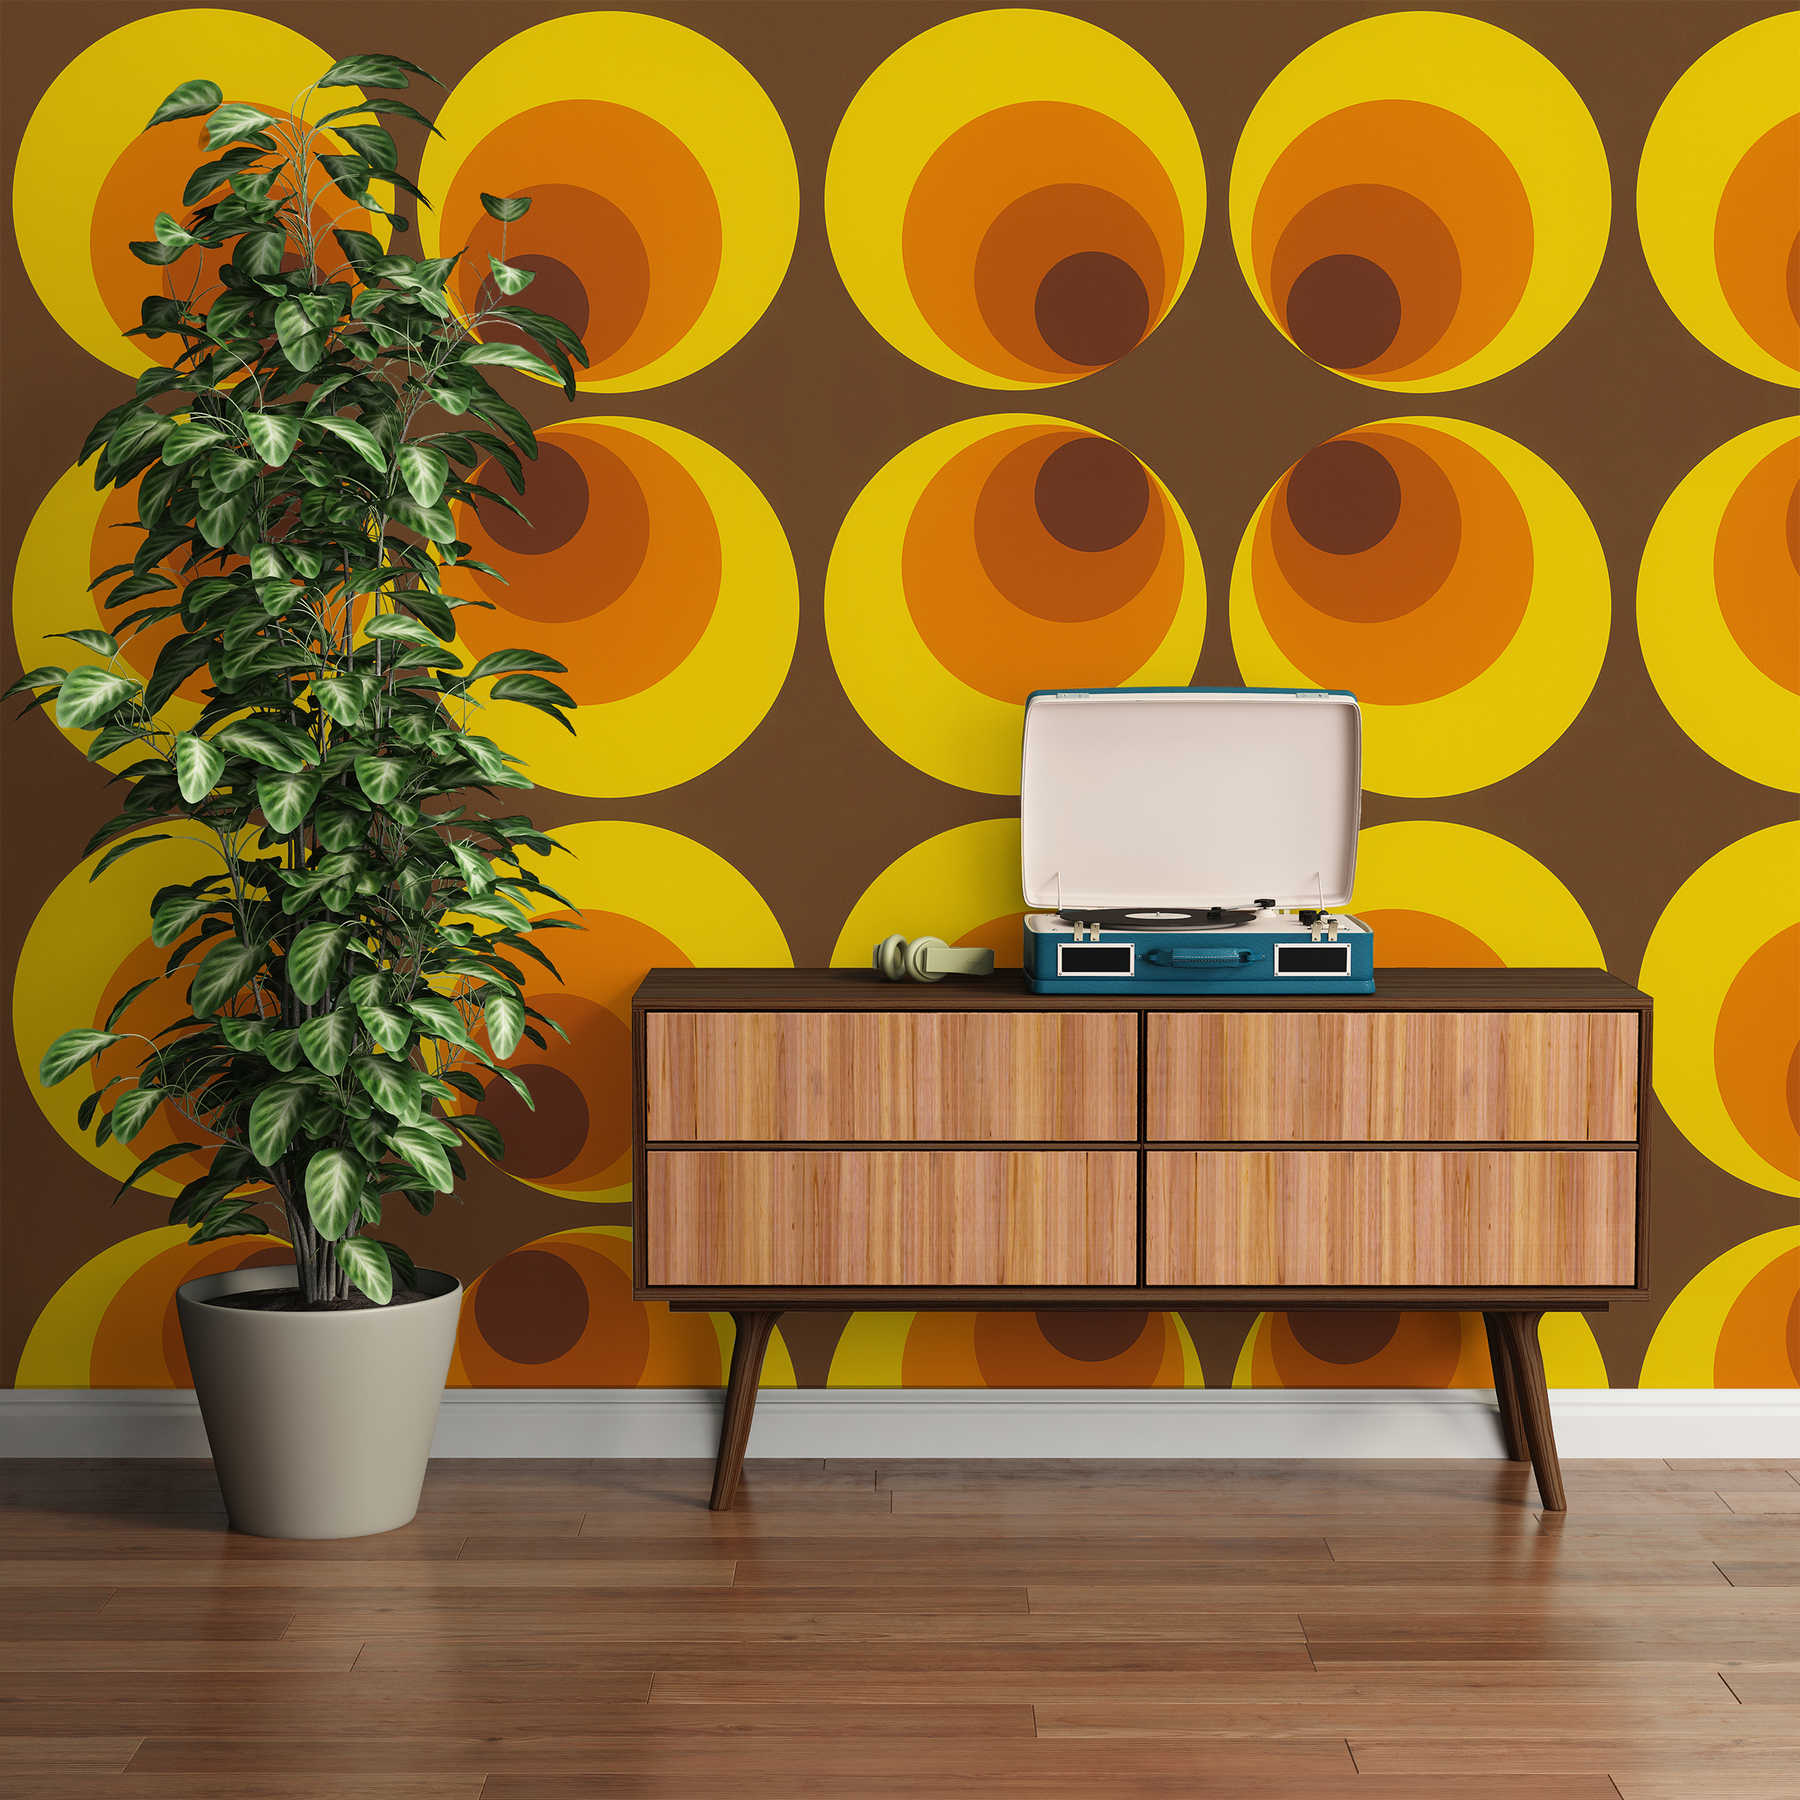             Vintage Tapete mit Retro Design – Braun, Gelb, Orange
        